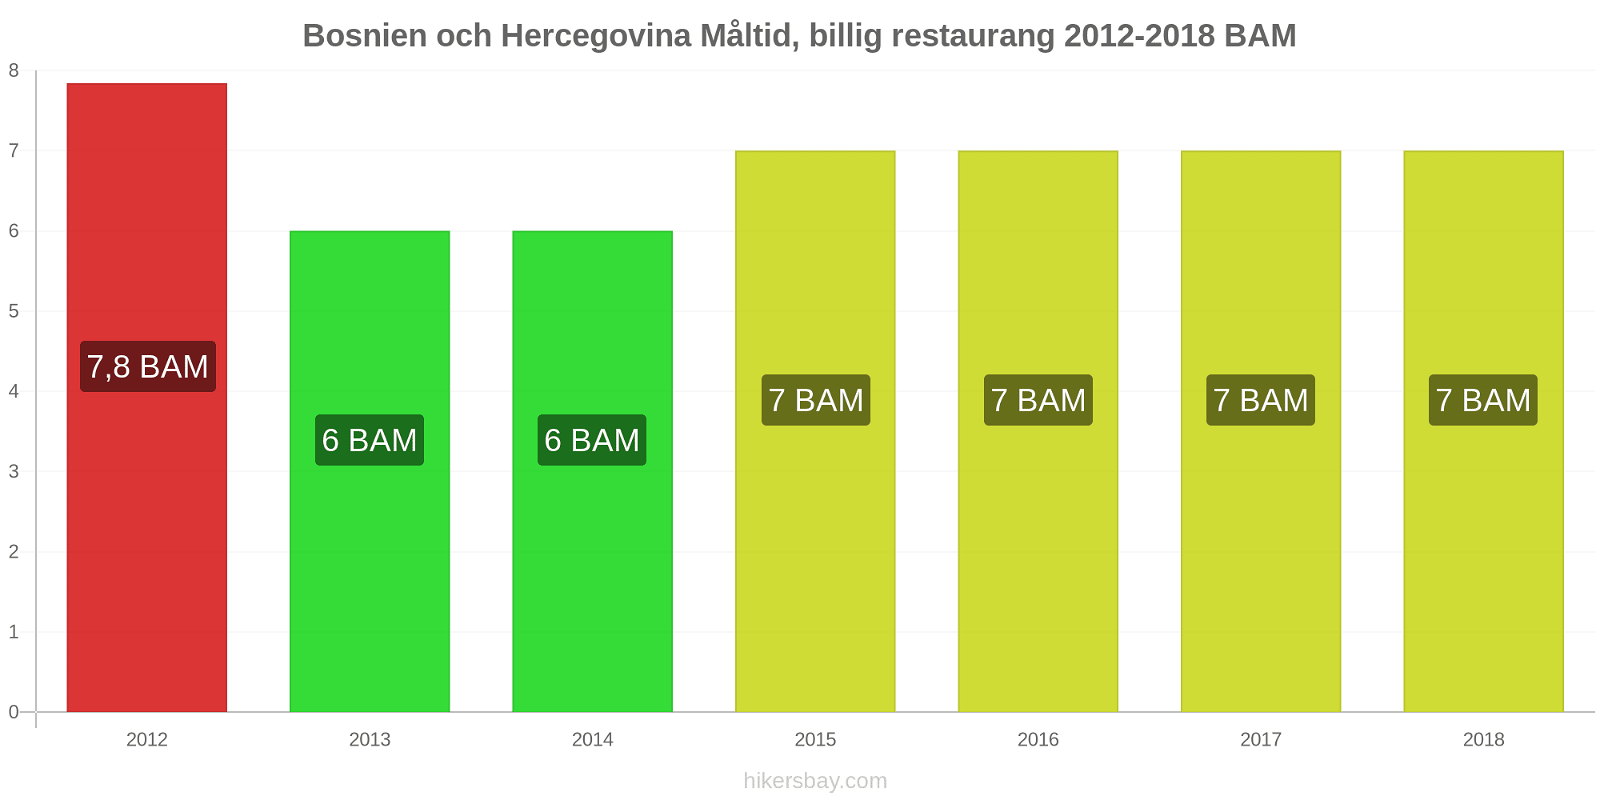 Bosnien och Hercegovina prisändringar Måltid i en billig restaurang hikersbay.com